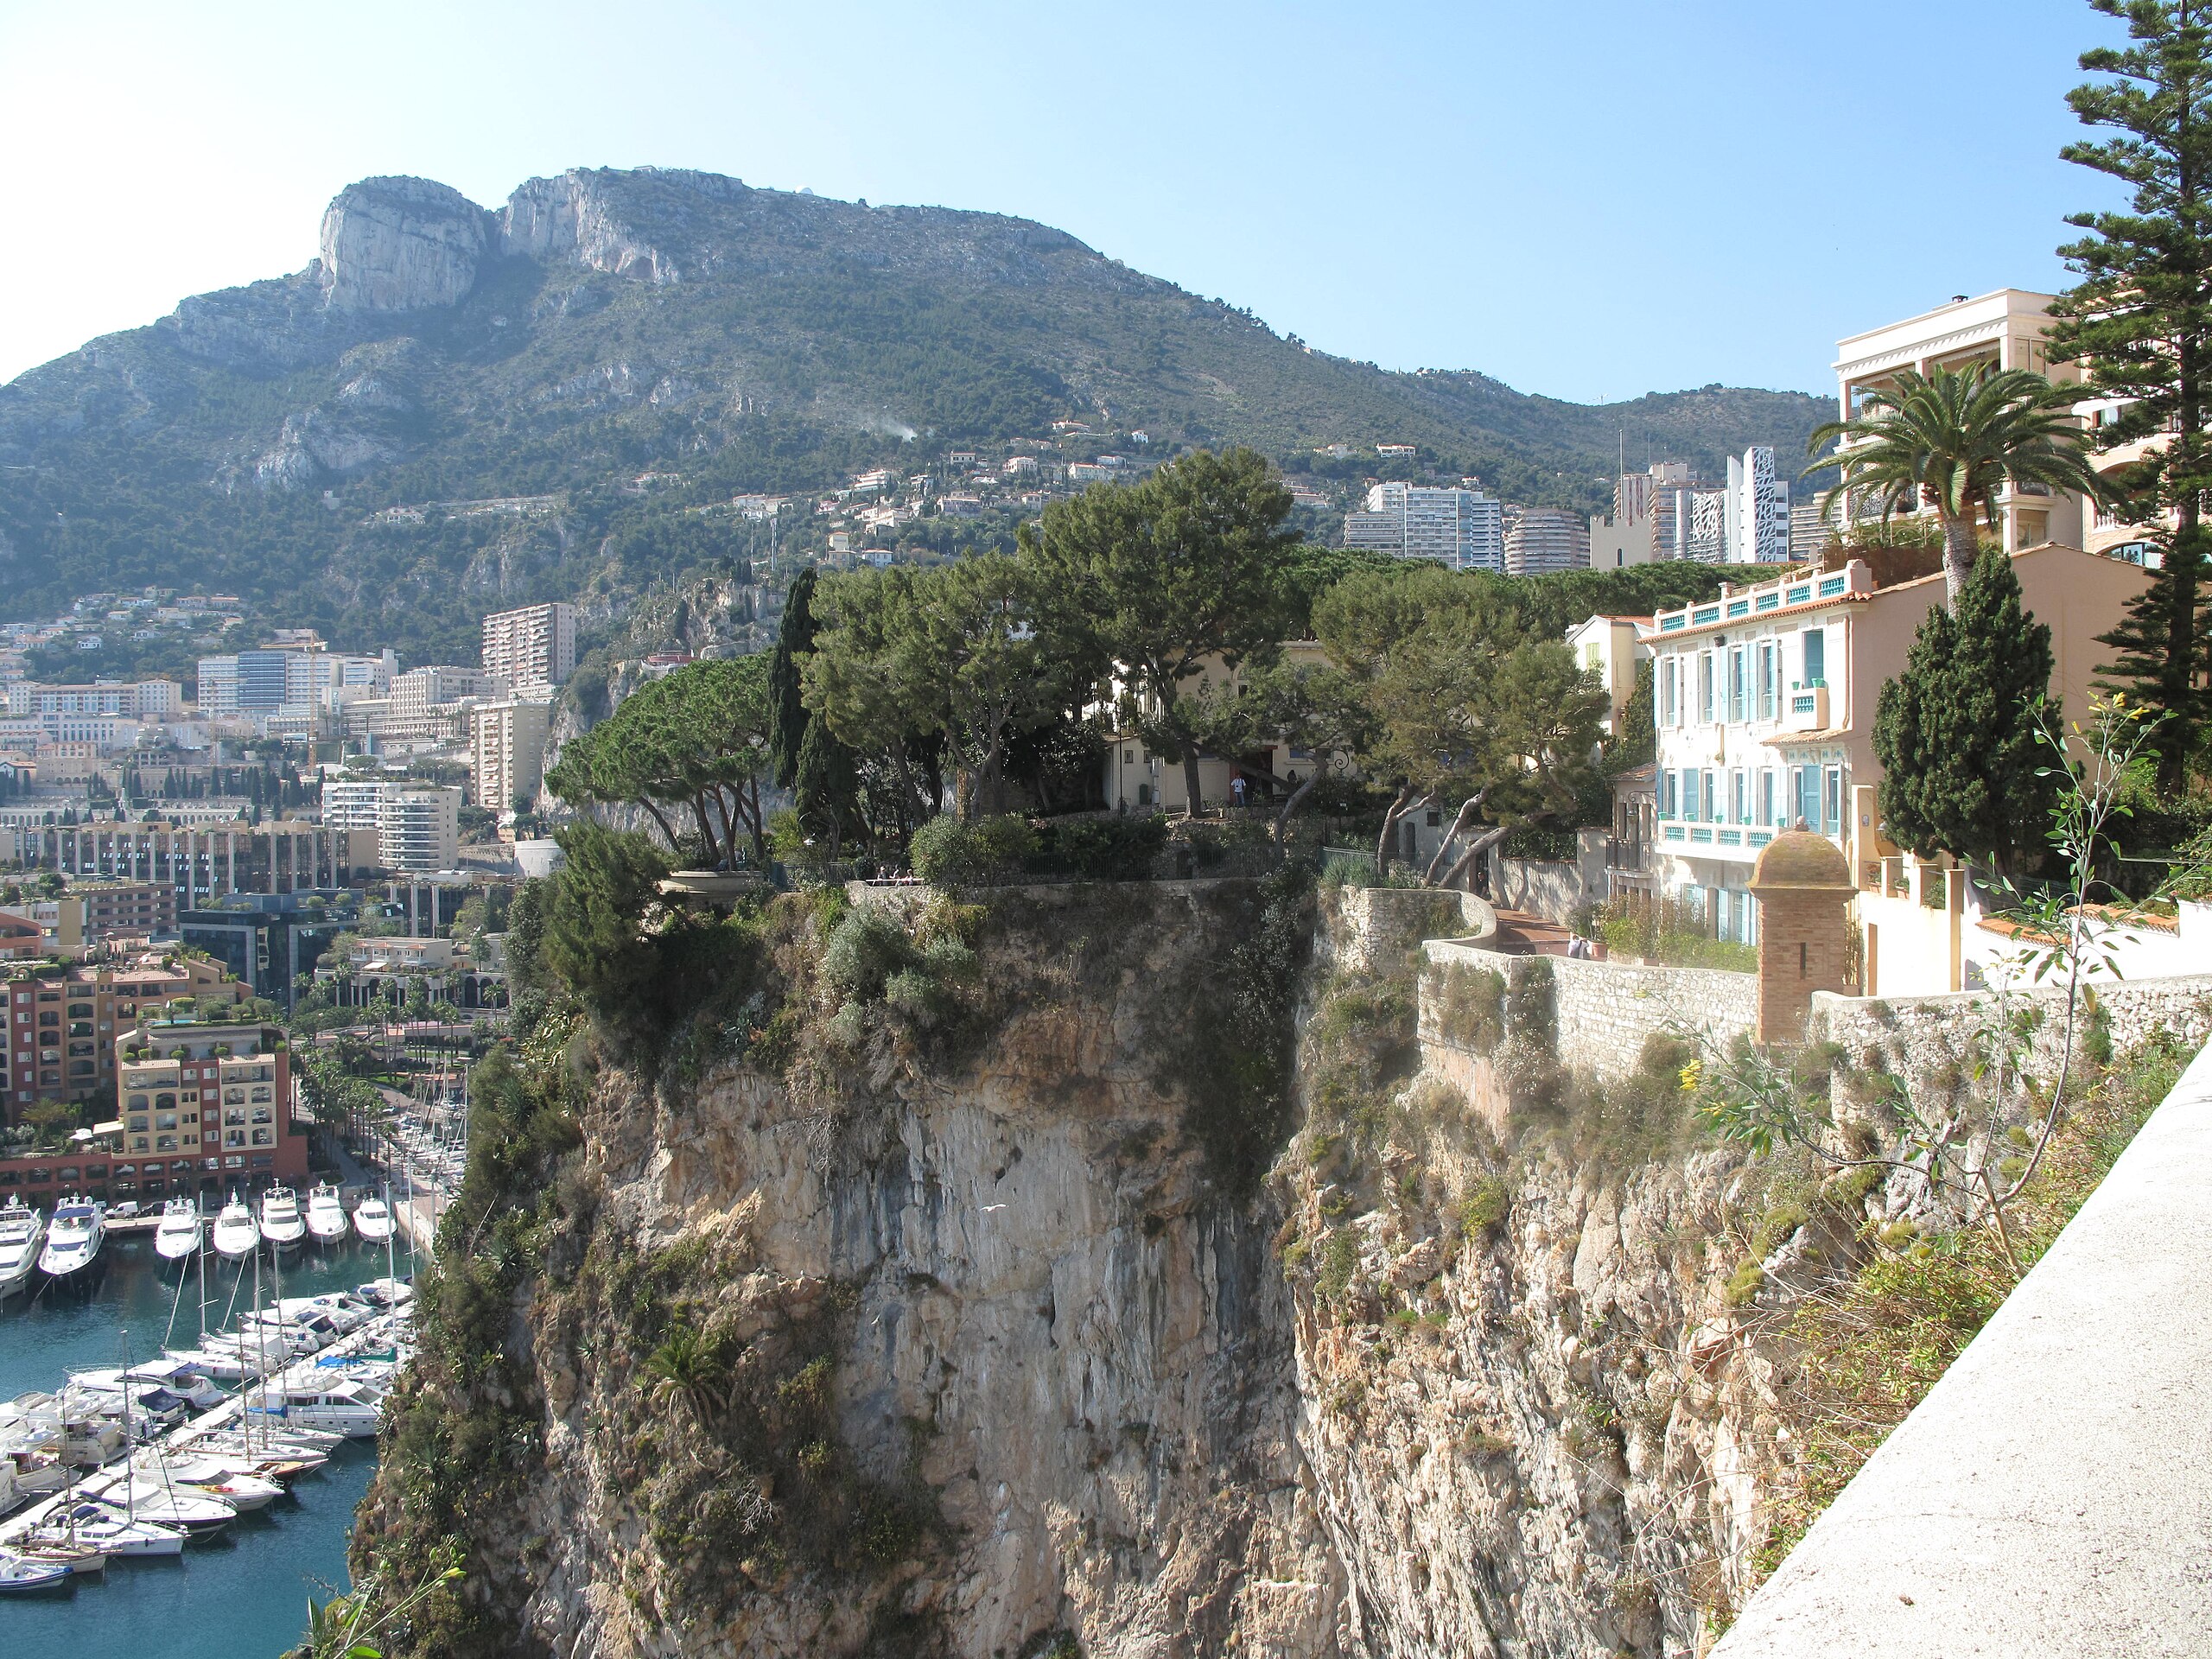 File:The Tete de Chien seen from Monaco-Ville.jpg - Wikimedia Commons